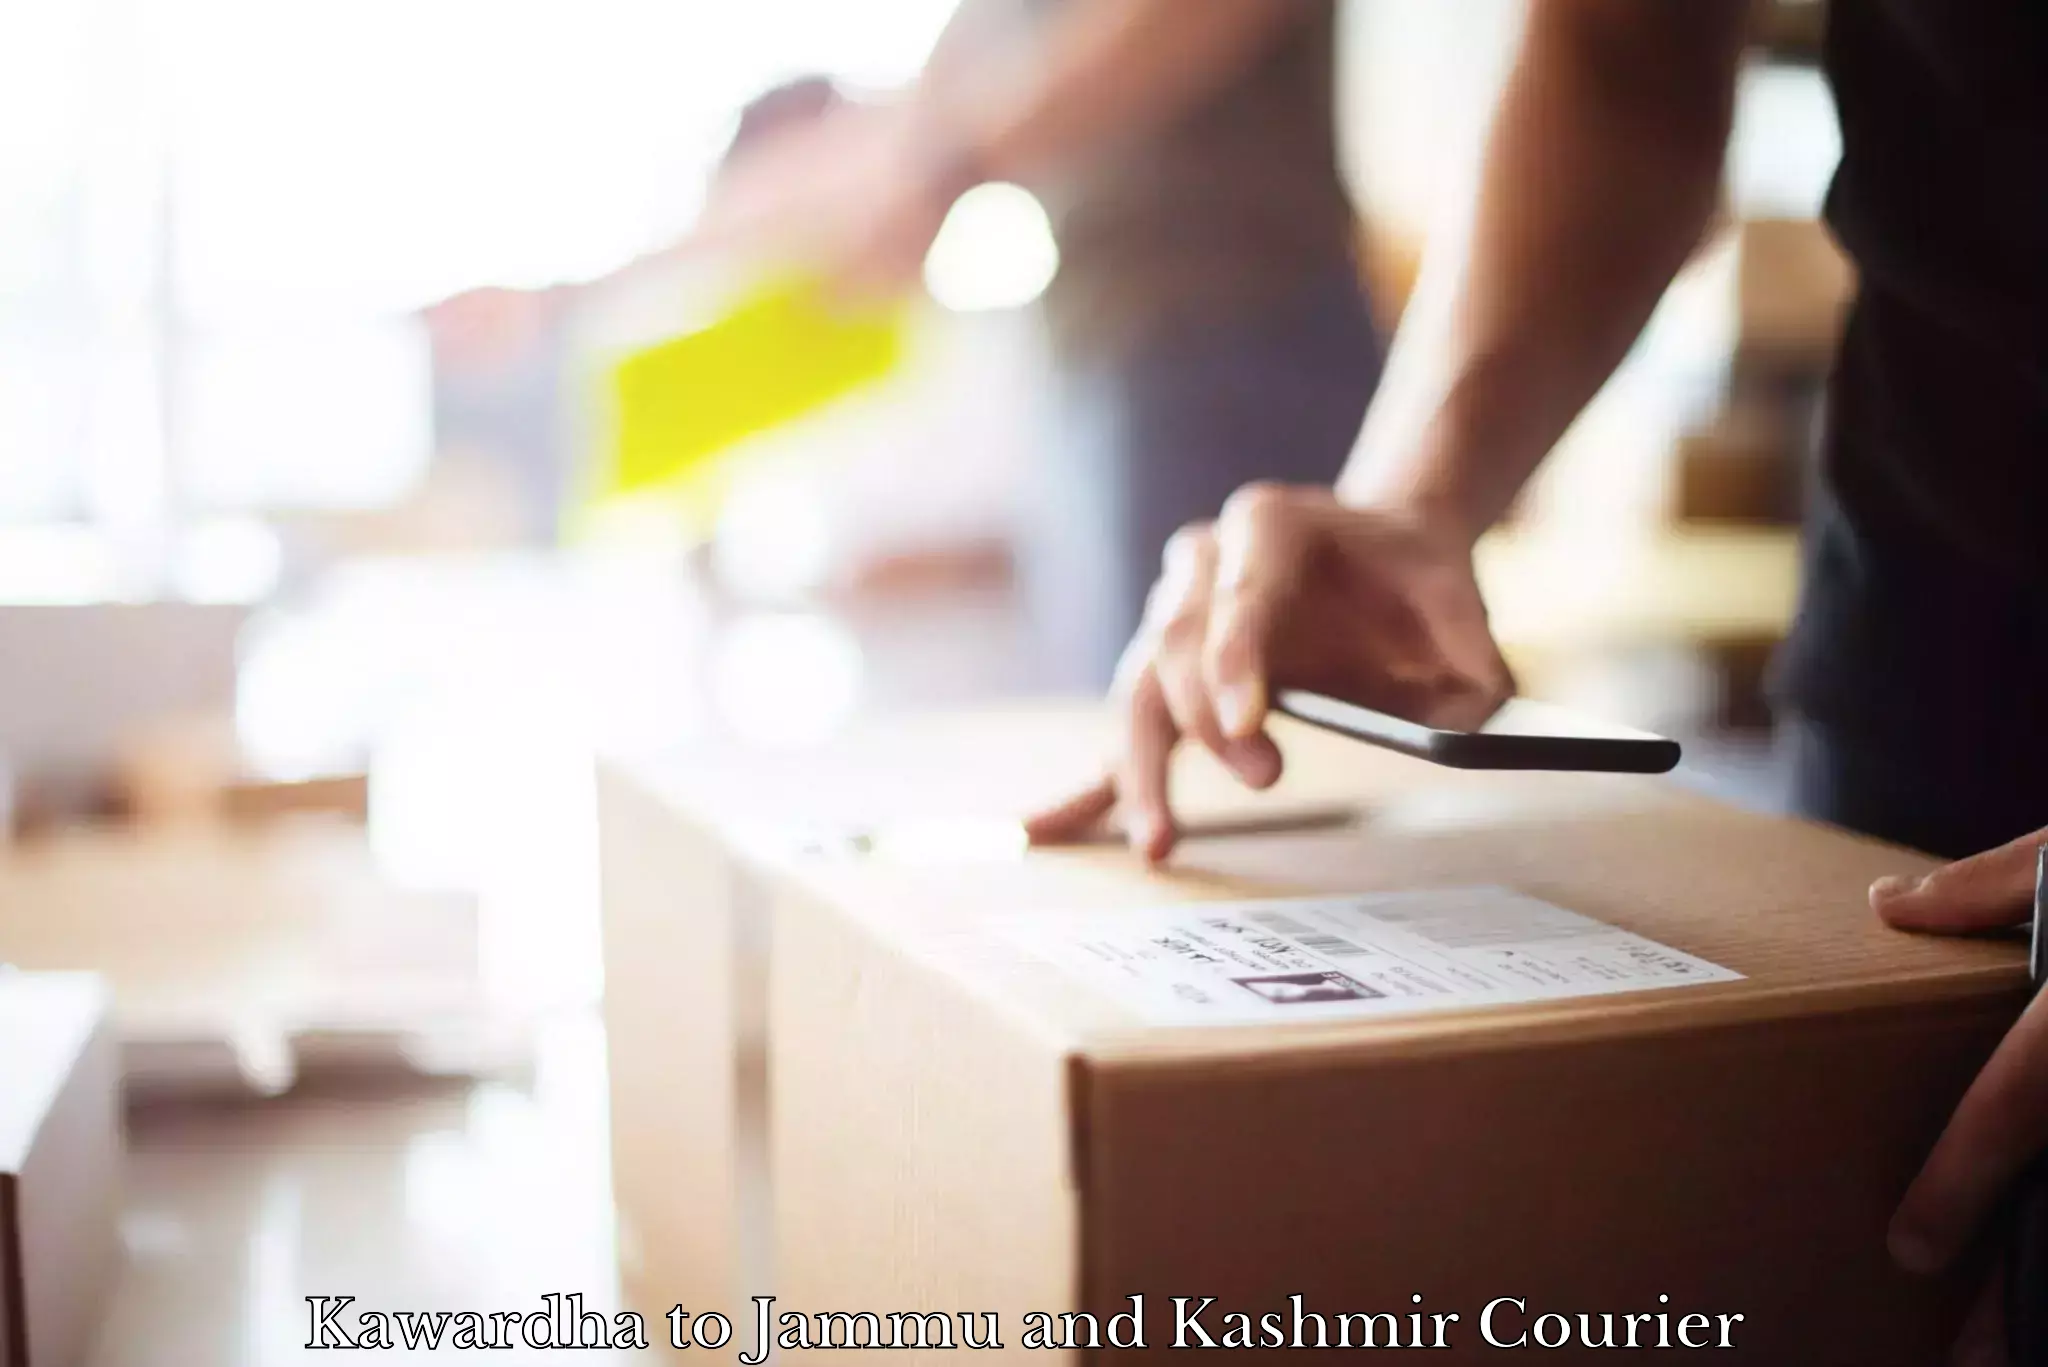 Online shipping calculator Kawardha to Jammu and Kashmir